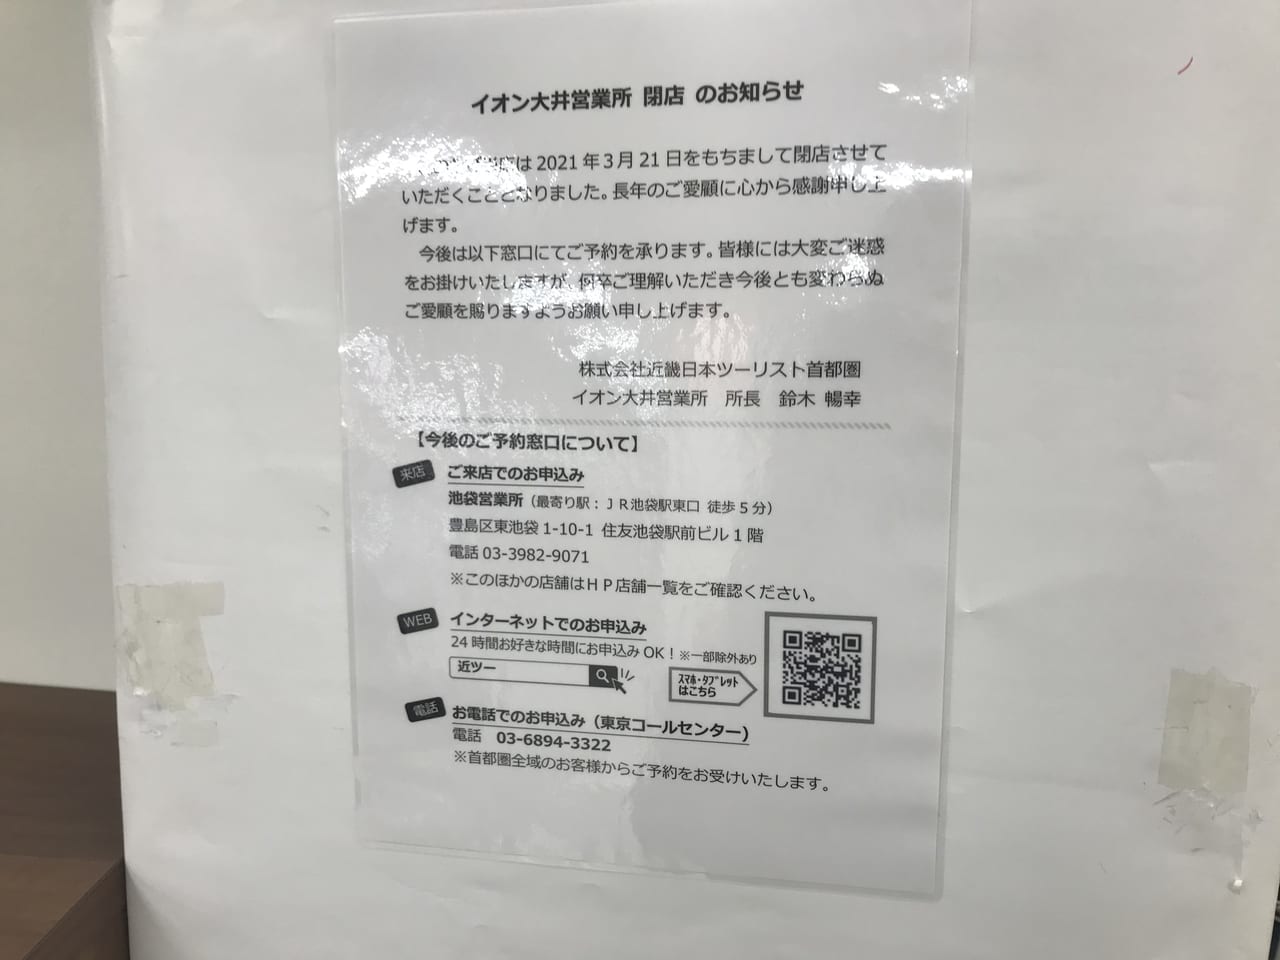 イオン大井店にあった近畿日本ツーリストが閉店